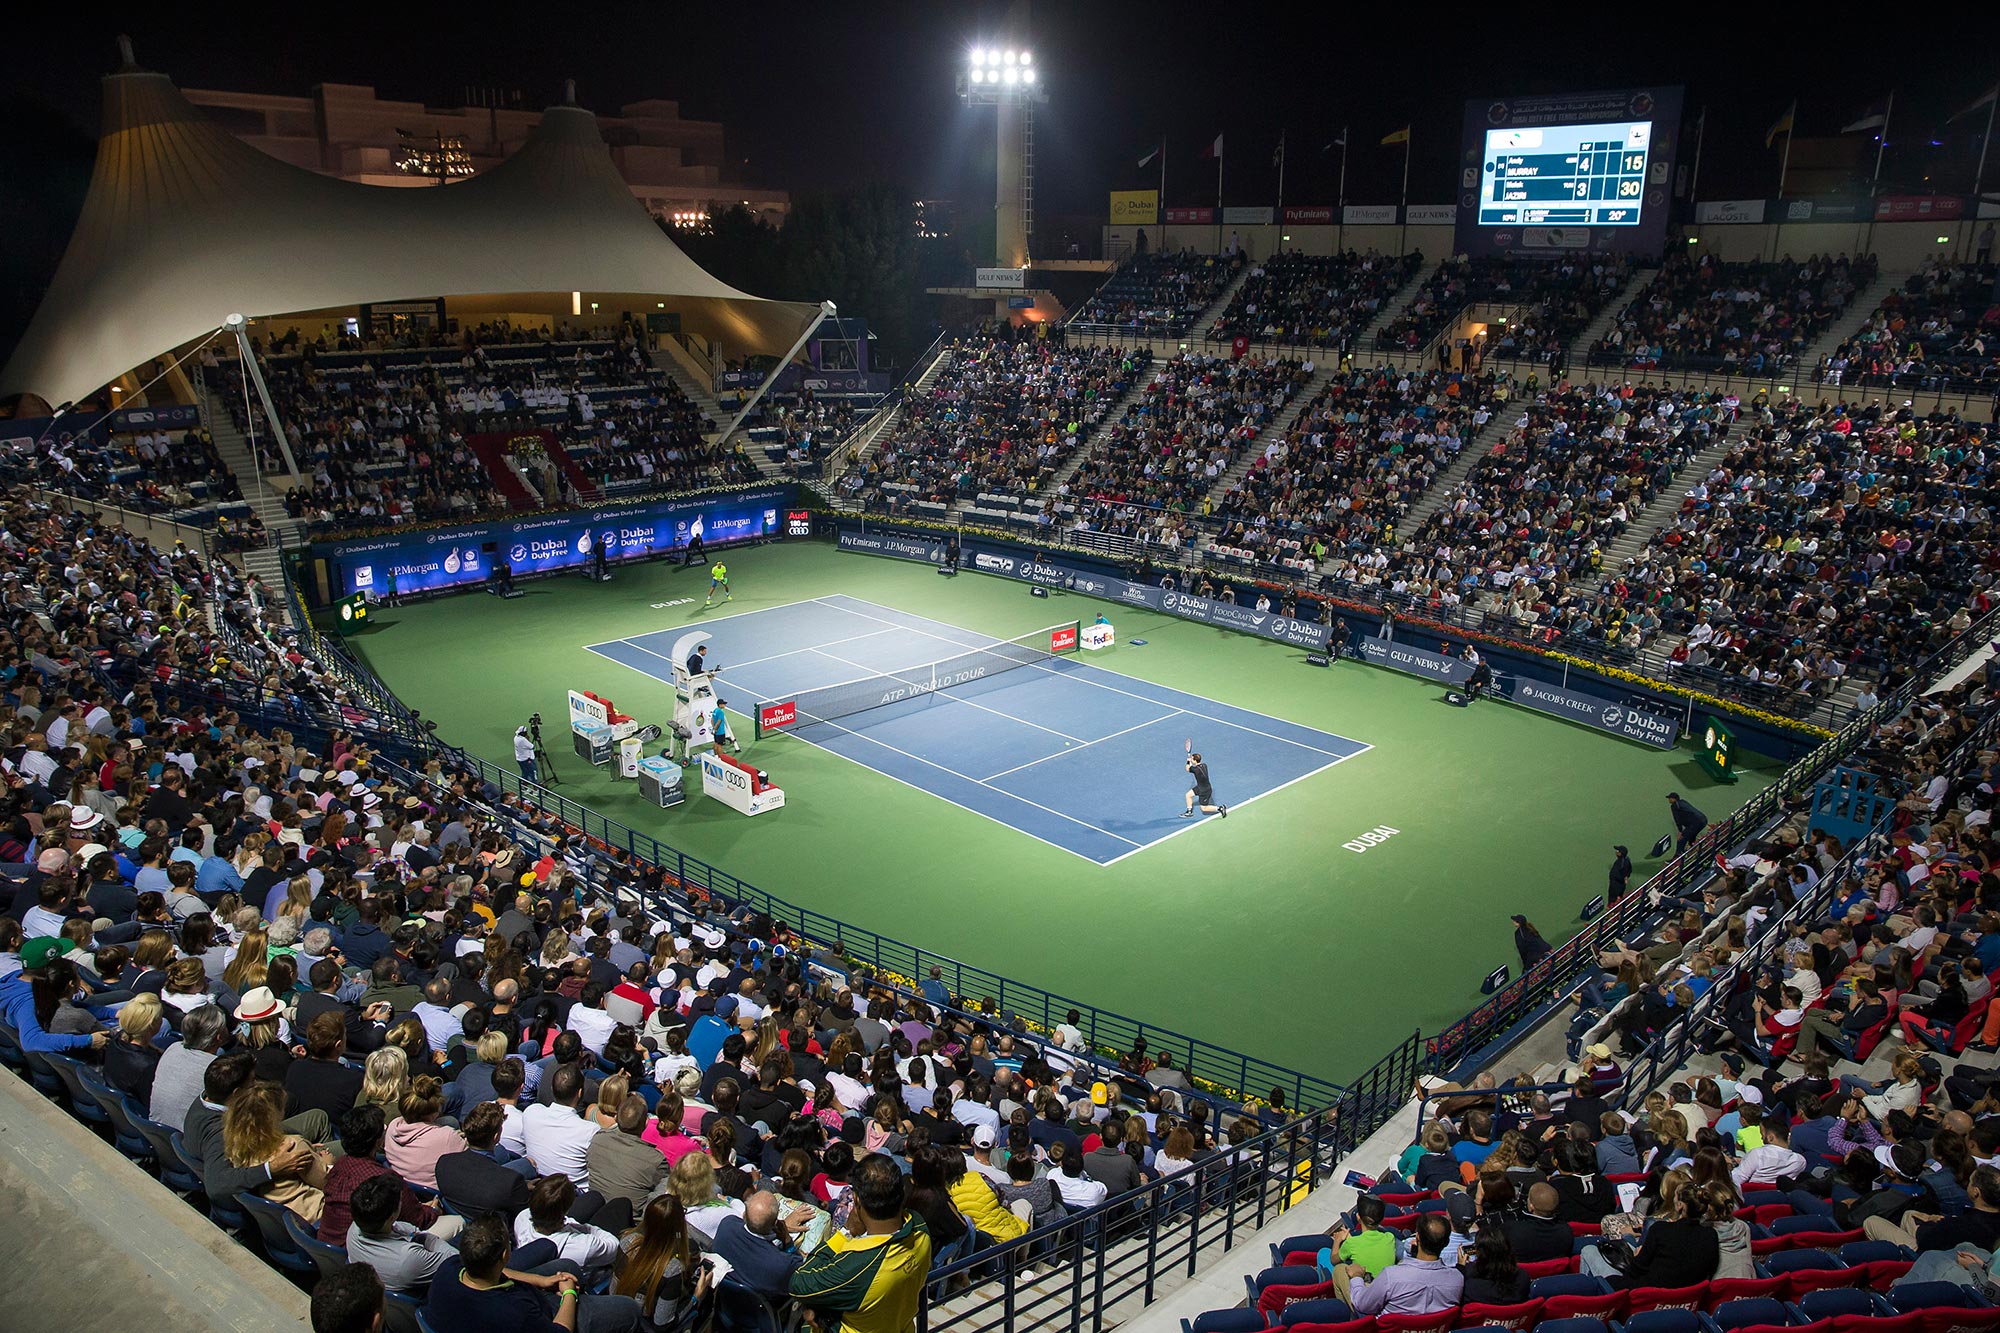 Dubai open tennis 2022